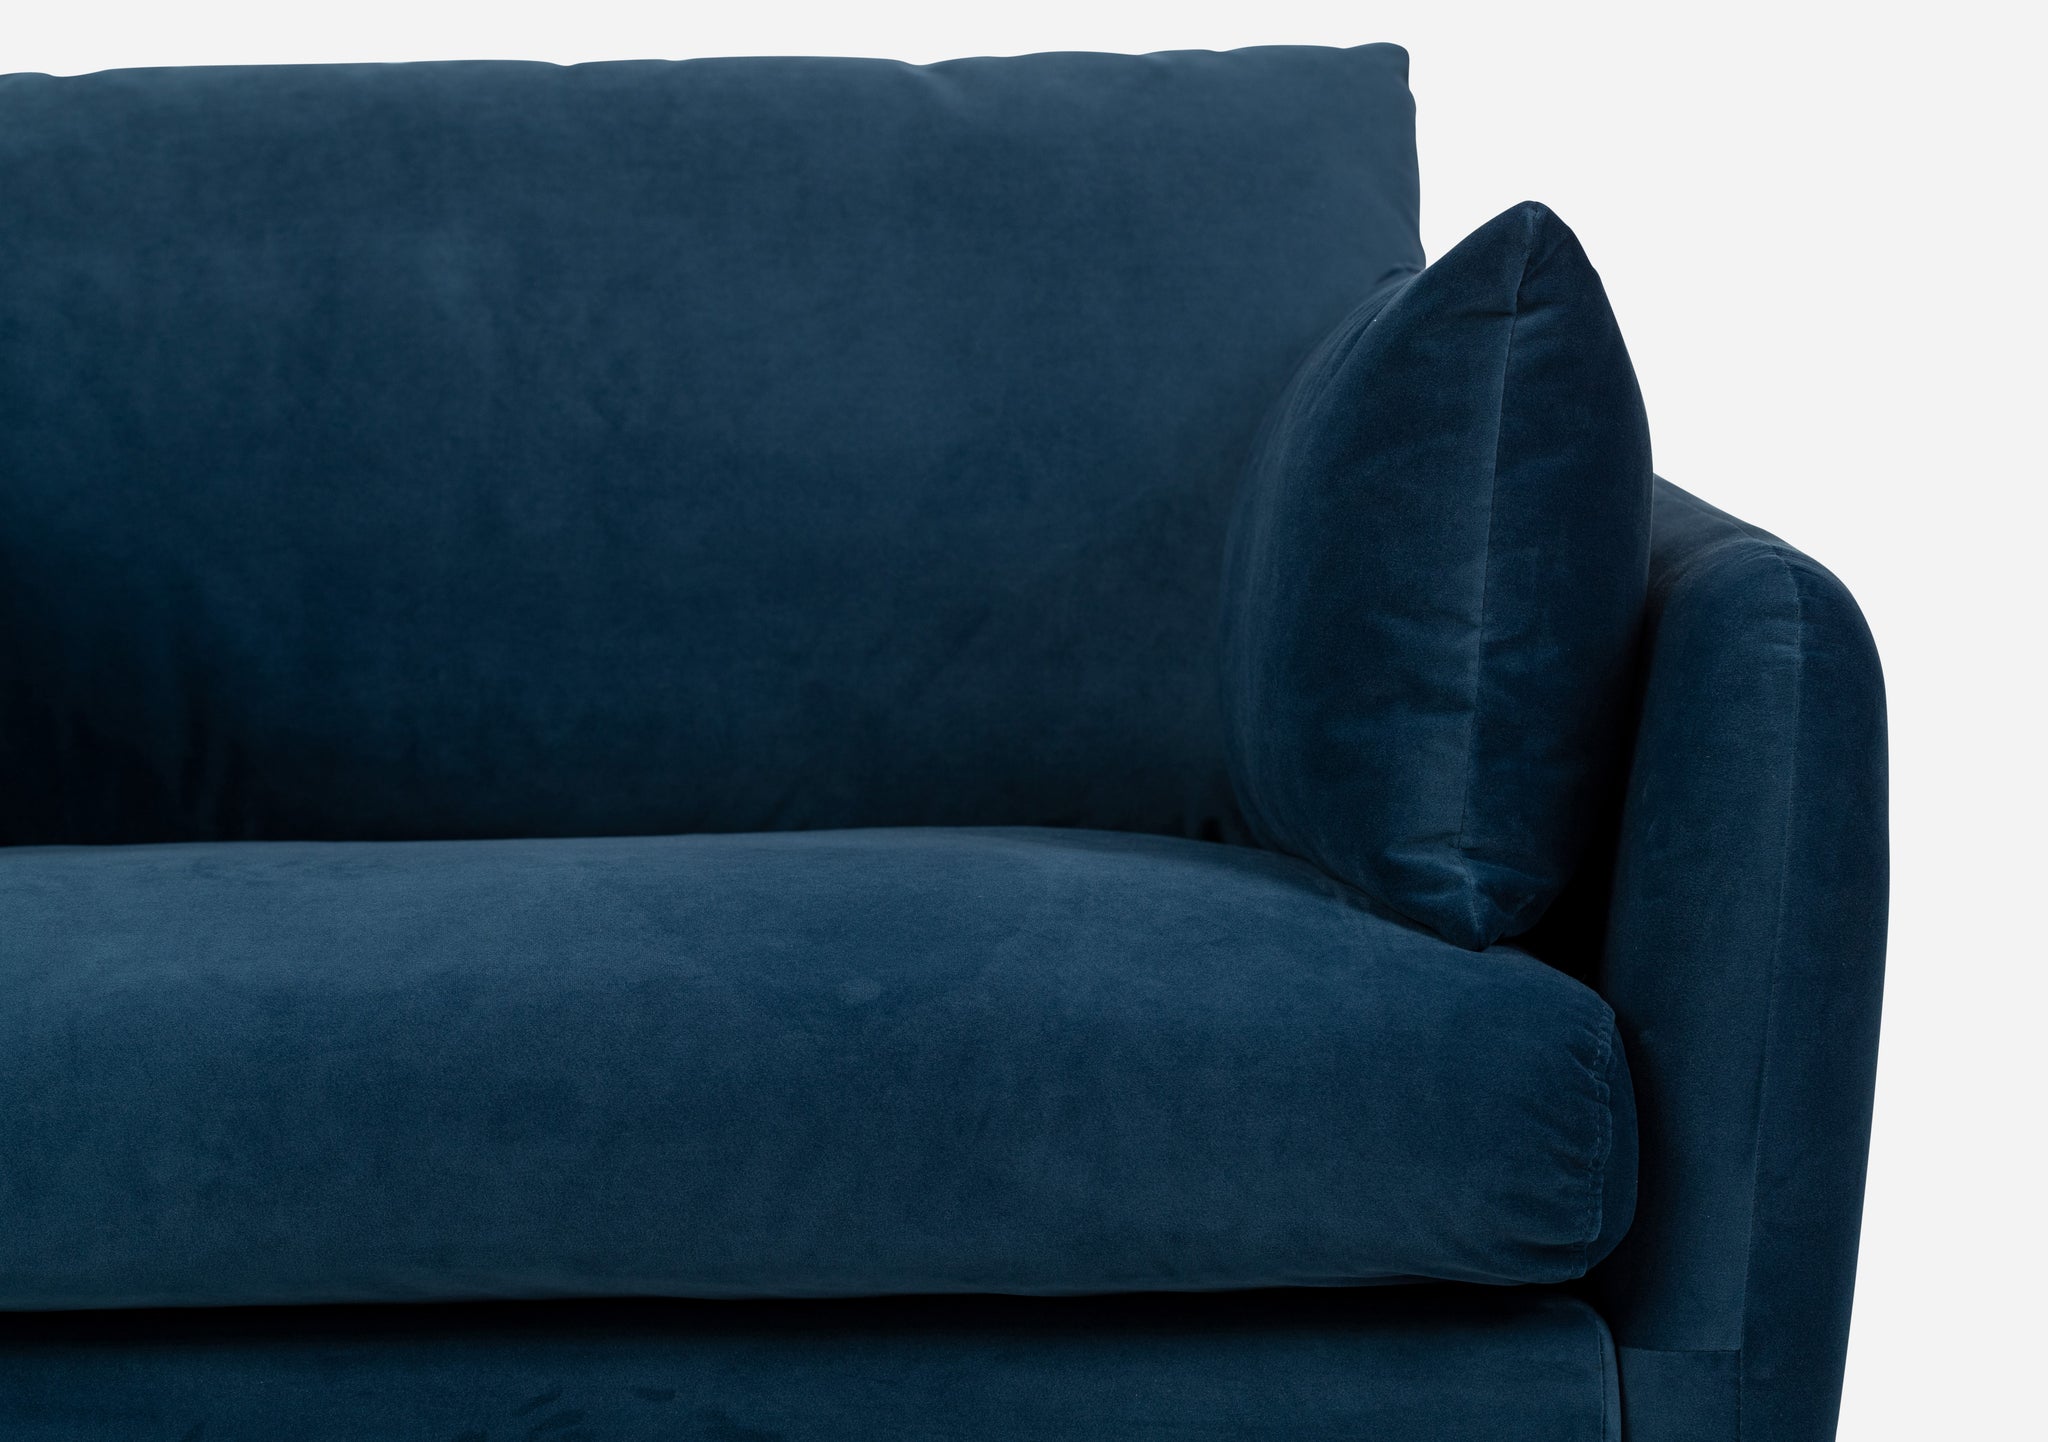 park sofa shown in blue velvet with gold legs